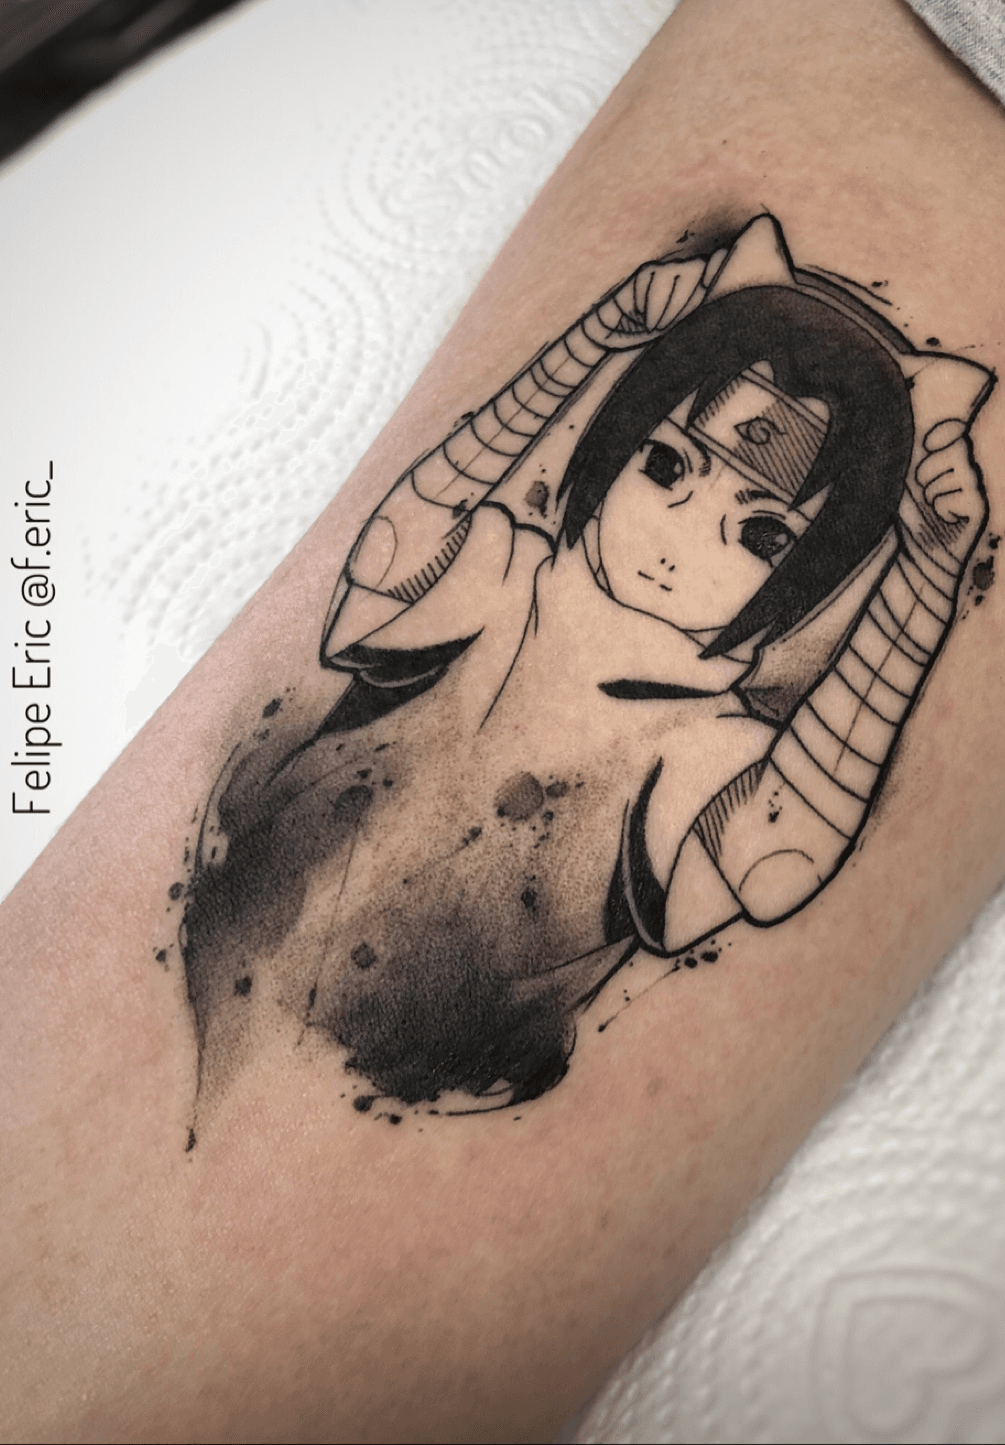 TATUAGENS DE ITACHI UCHIHA – Curiosidades e sobre a tattoo de Itachi Uchiha  – Anime Naruto 